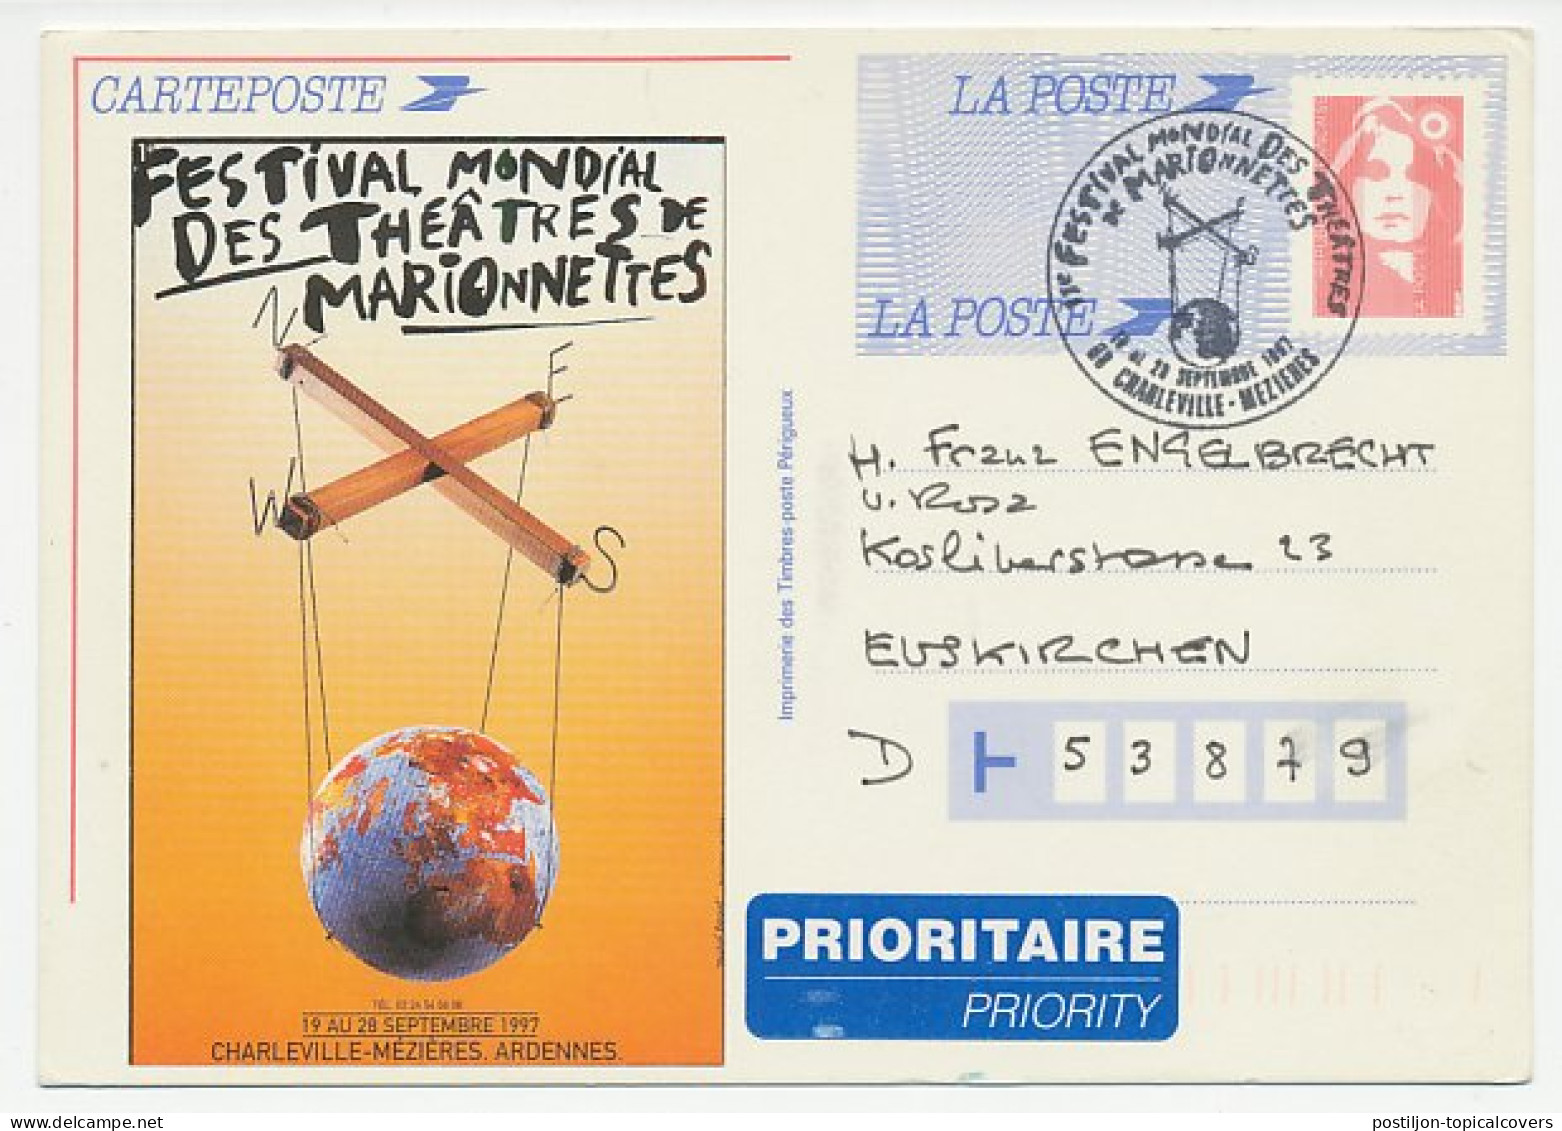 Postal Stationery / Postmark France 1997 World Festival - Marionette - Puppet. Globe On Left Side Is Vignette - Not Pri - Theatre